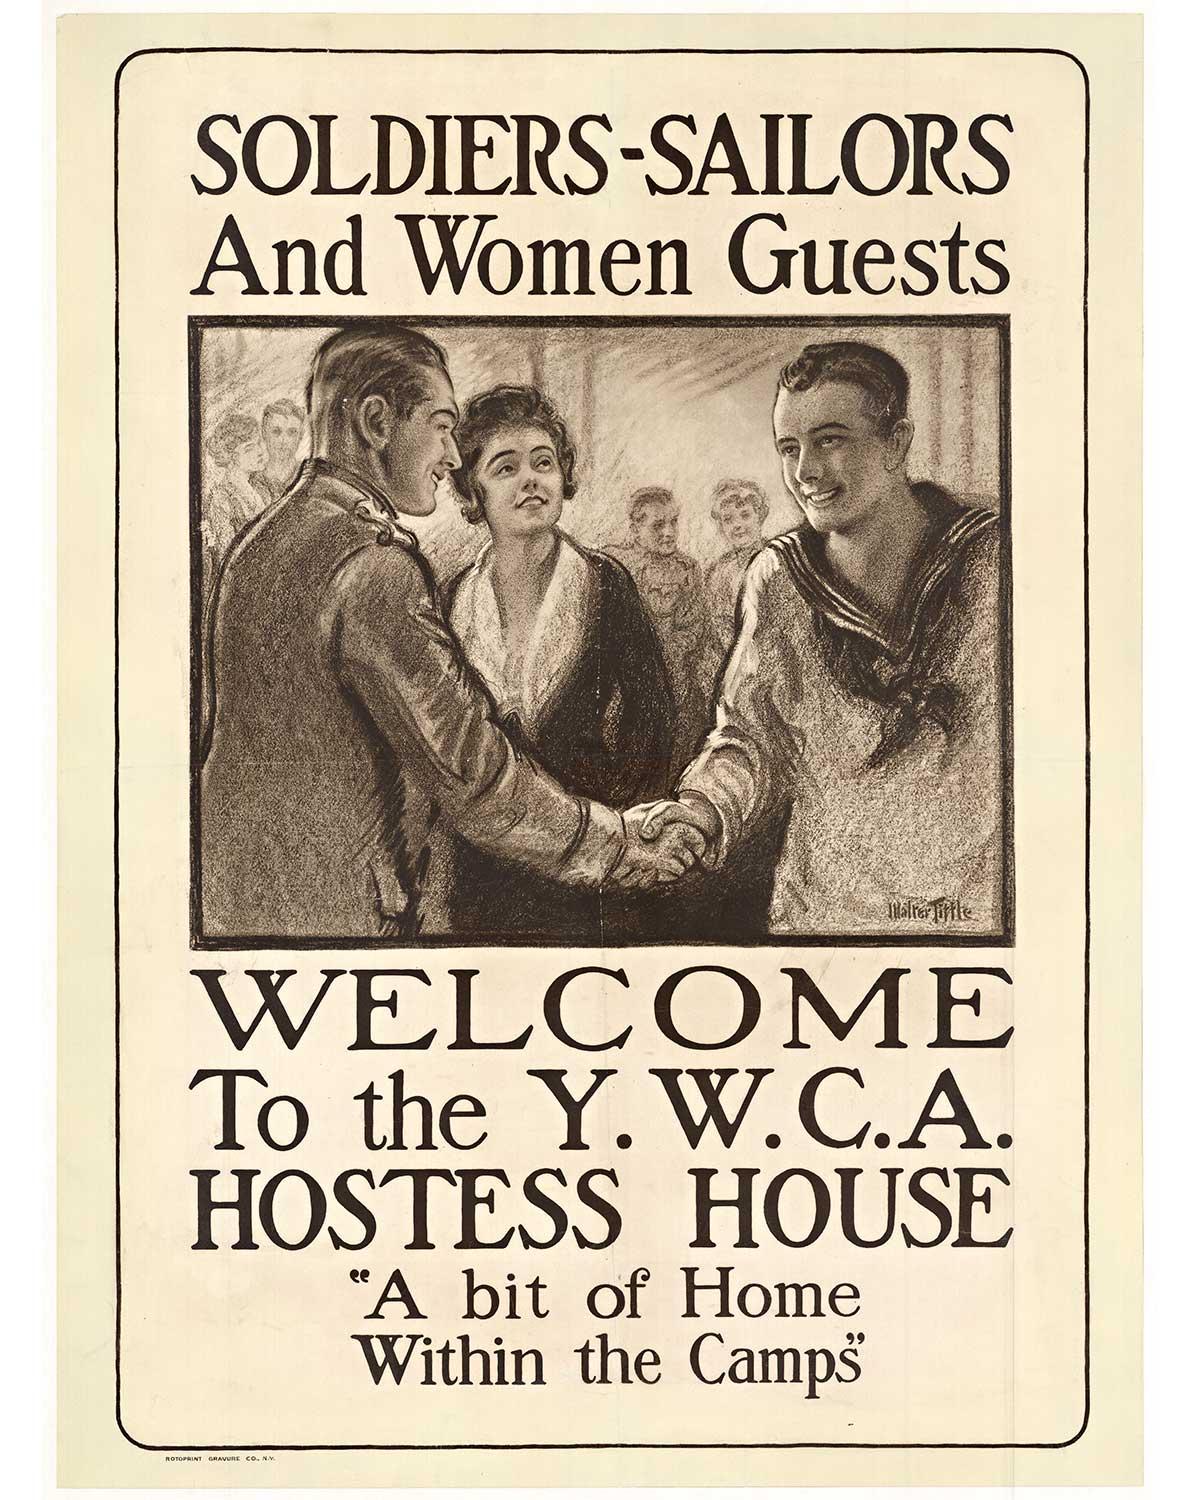 « Soldiers - Sailors and Women Guests » - Bienvenue à la maison d'hôte de la YWCA